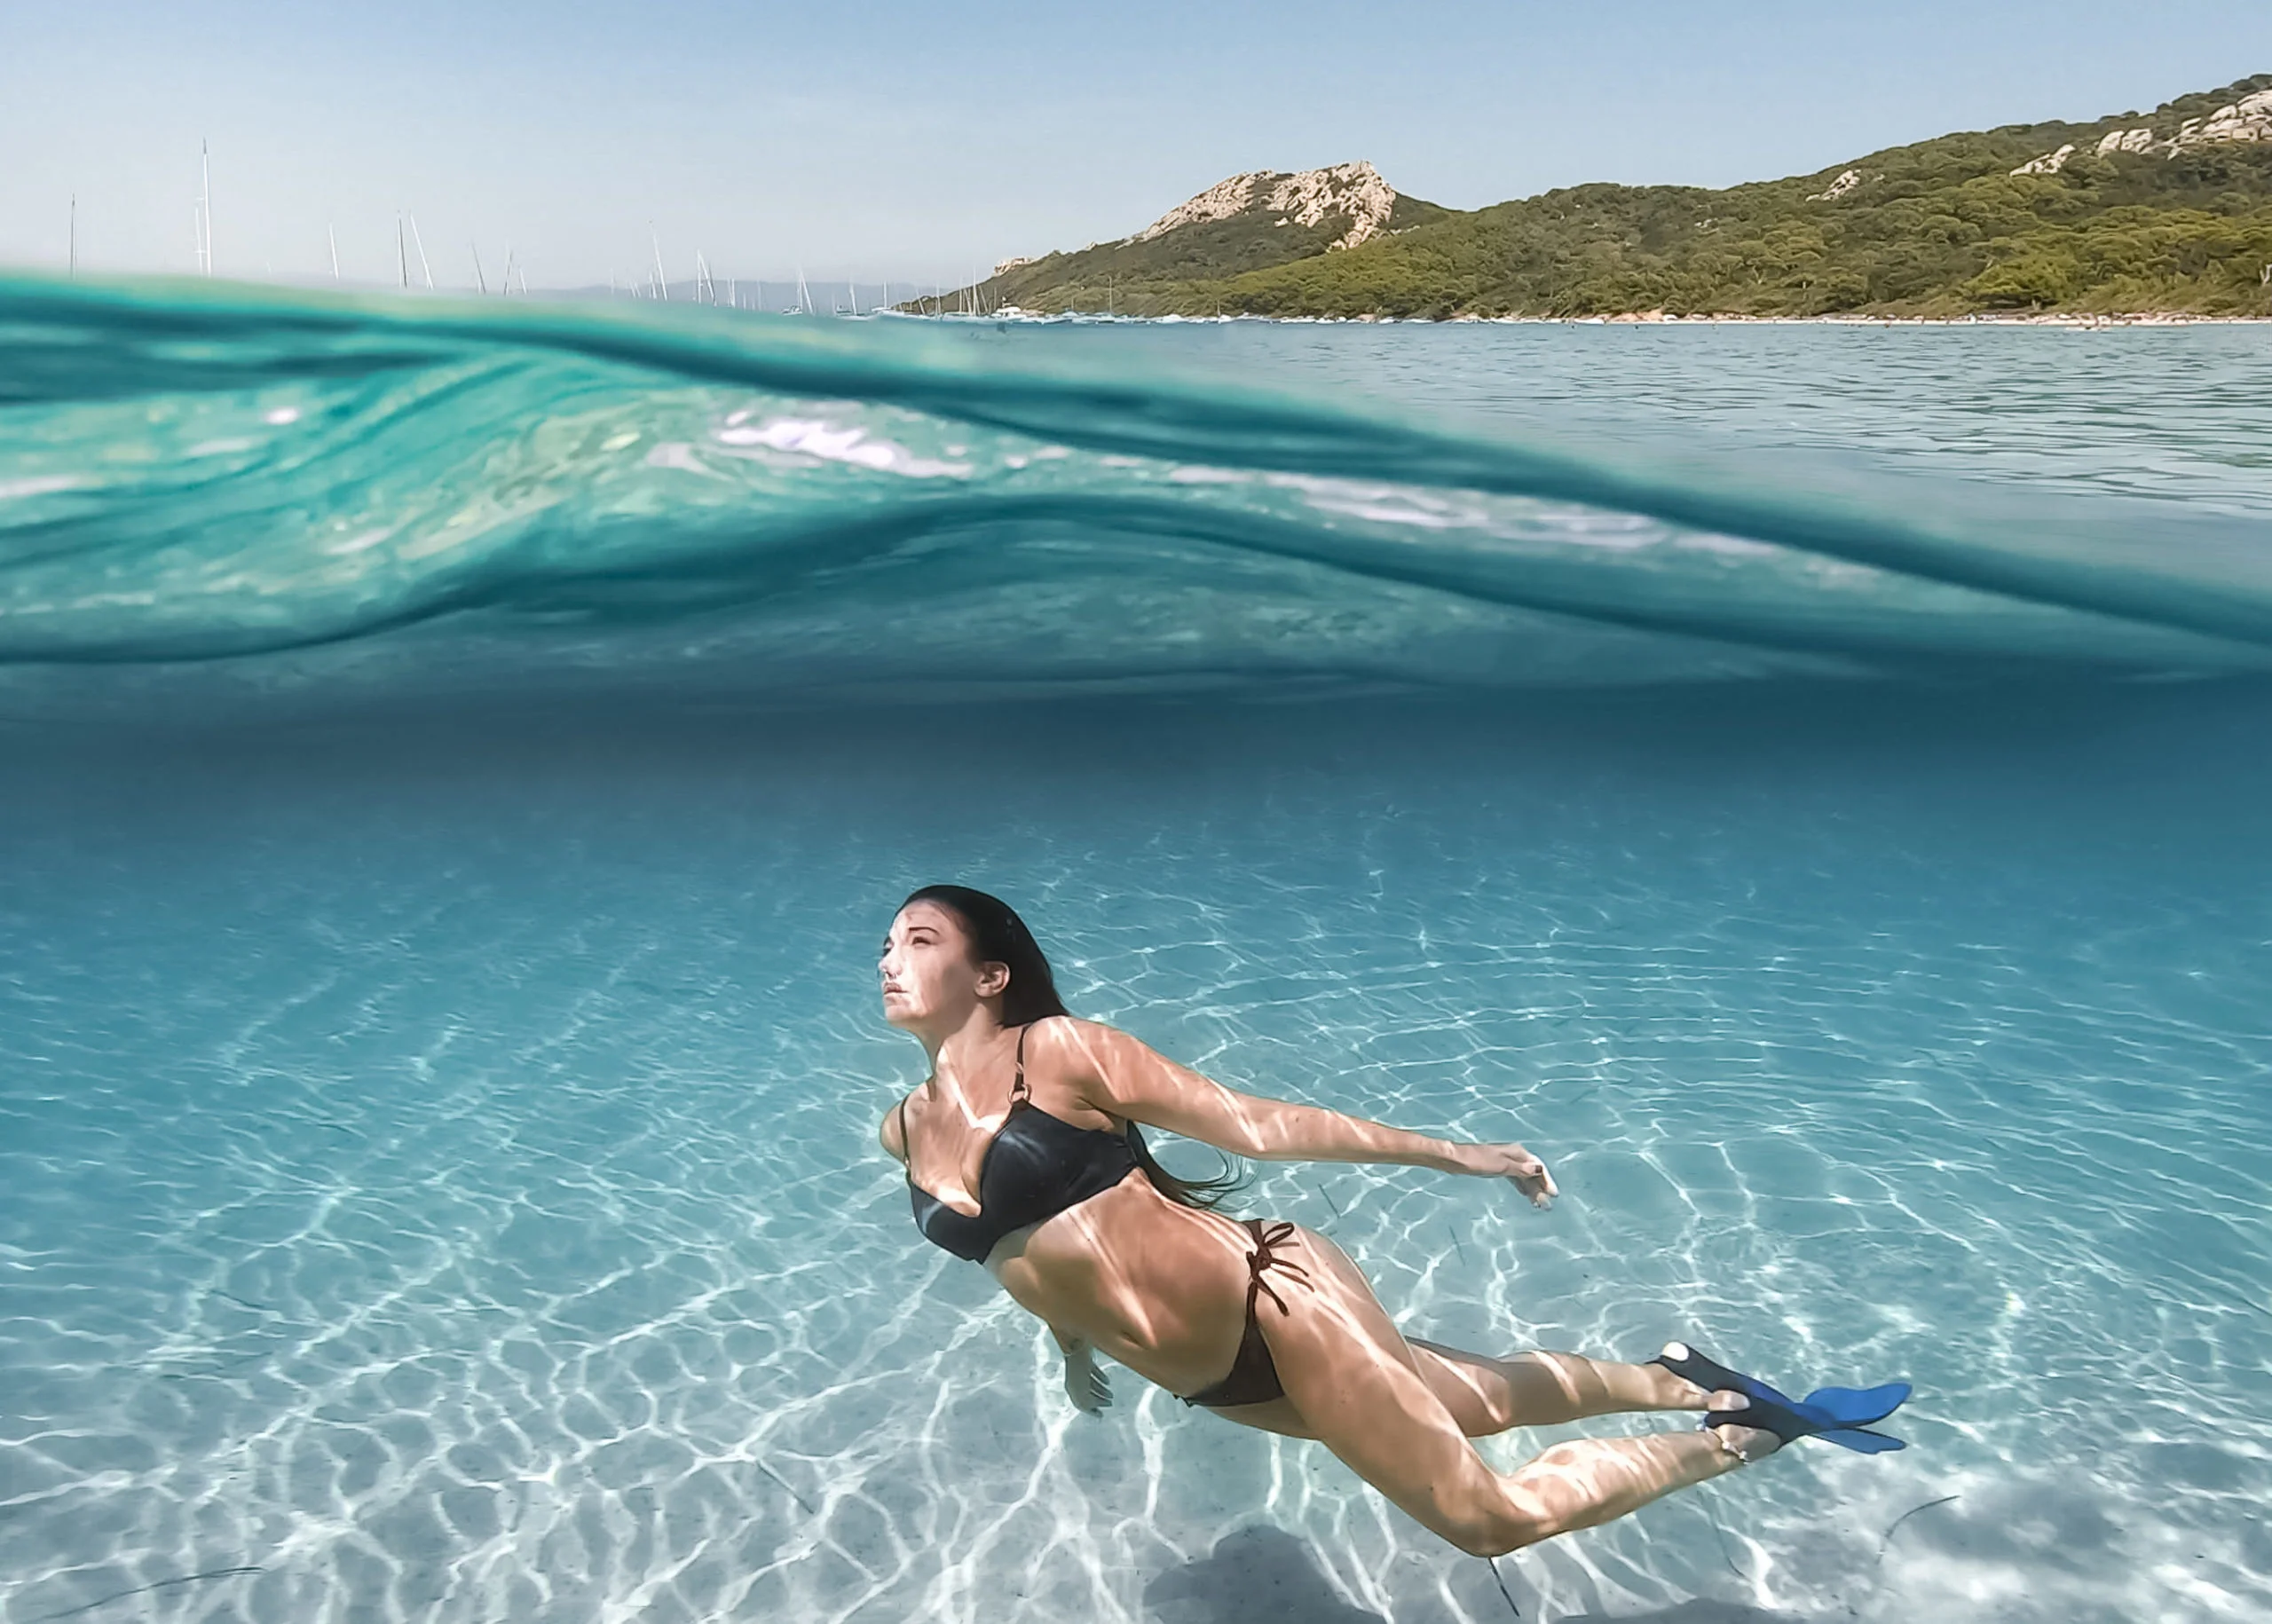 Comment faire de belles images sous l'eau avec votre go pro ? 